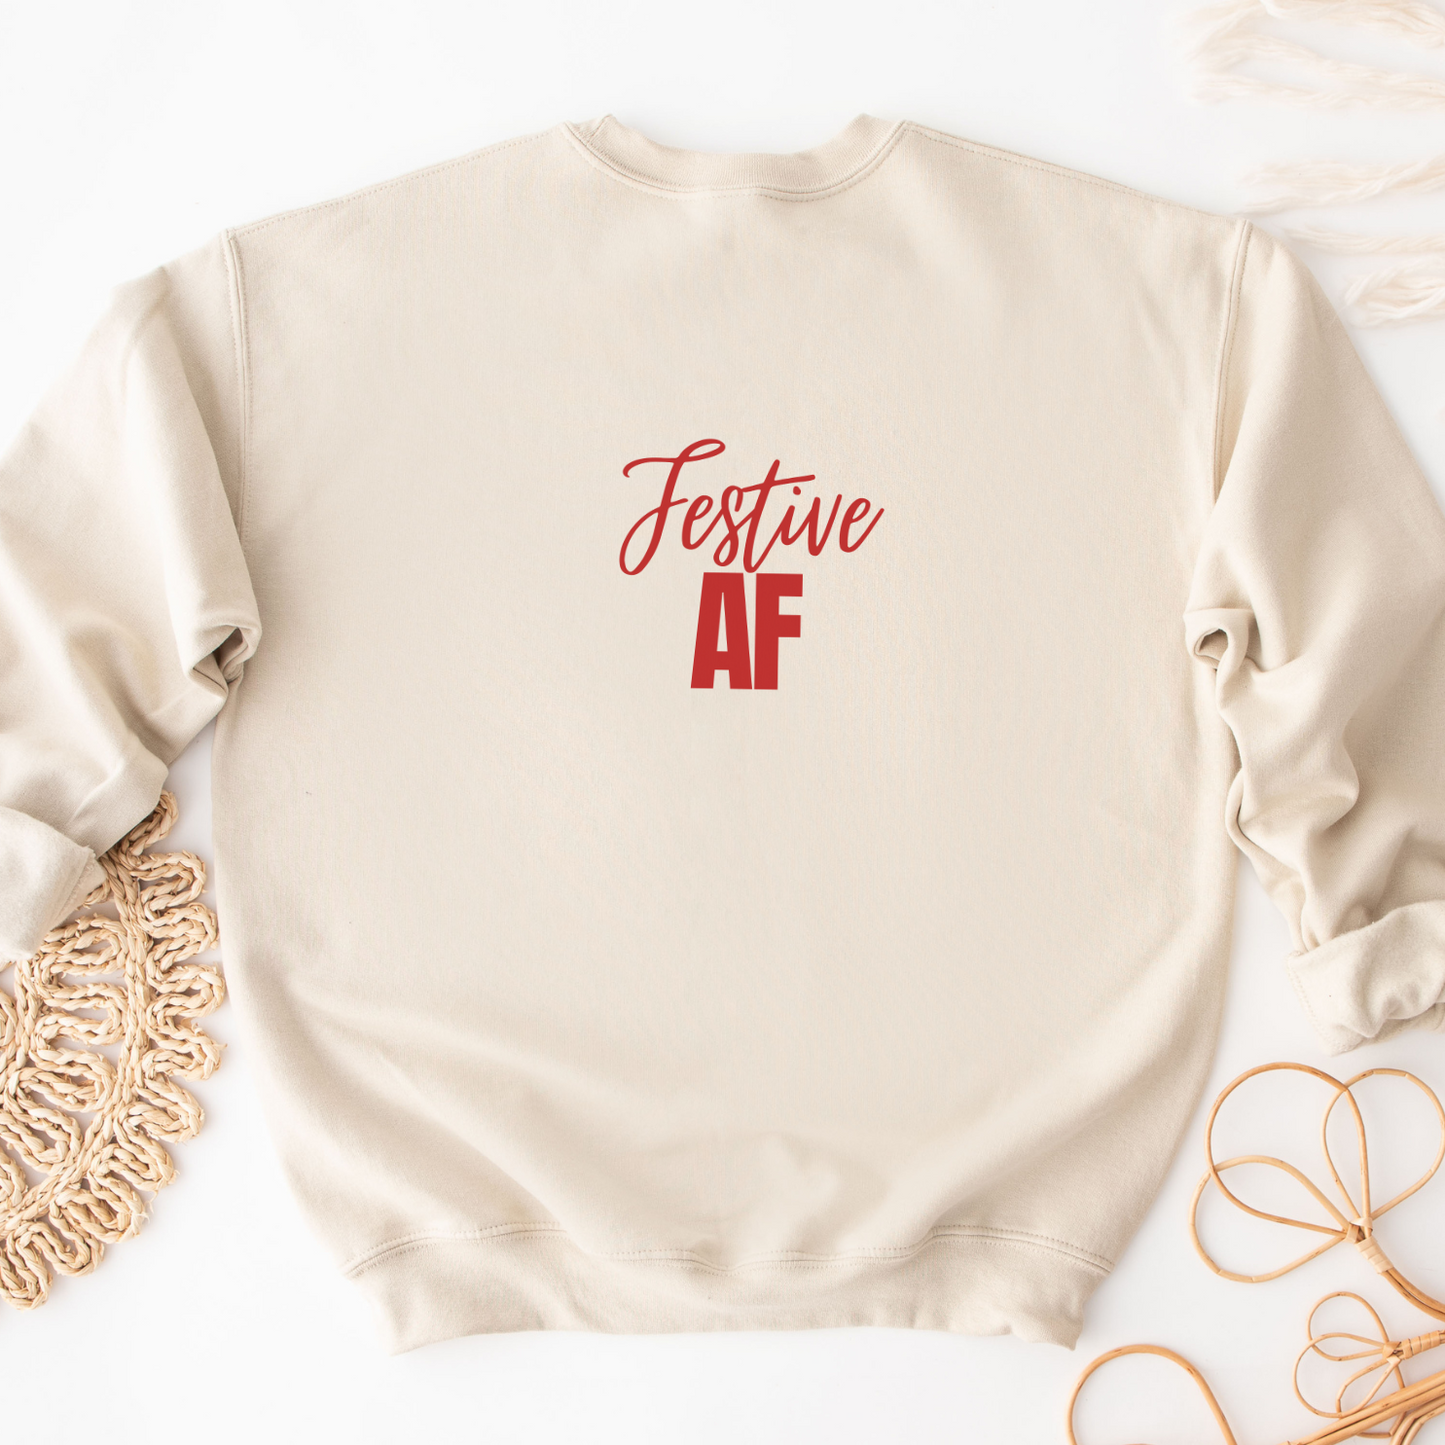 "Festive AF text design centered on a natural unisex sweater."